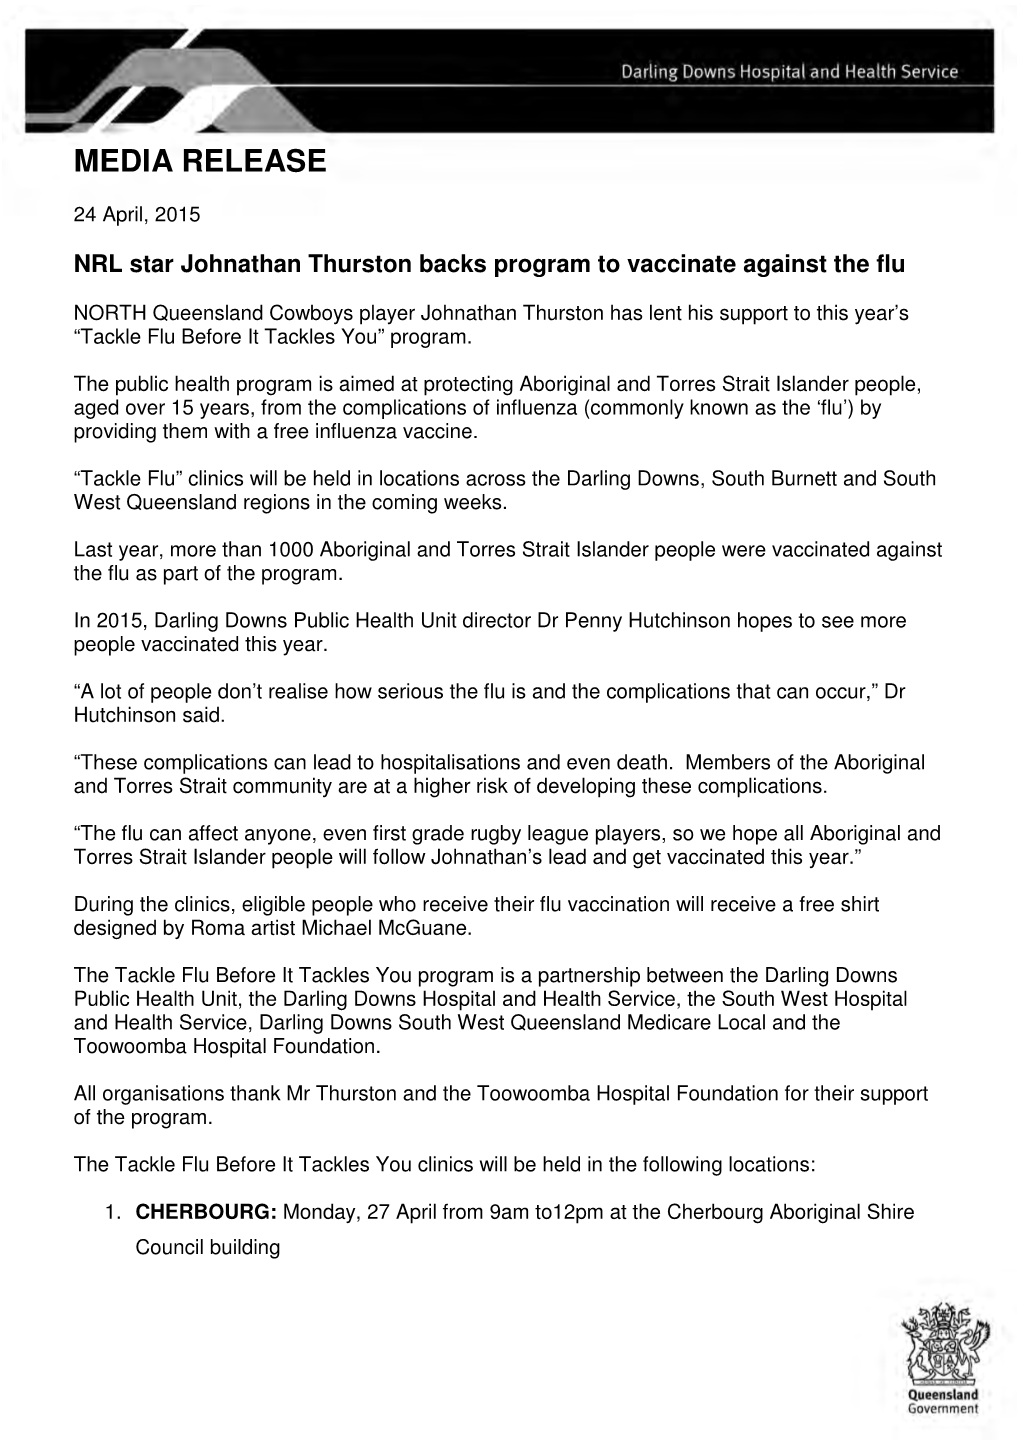 NRL Star Johnathan Thurston Backs Program to Vaccinate Against the Flu